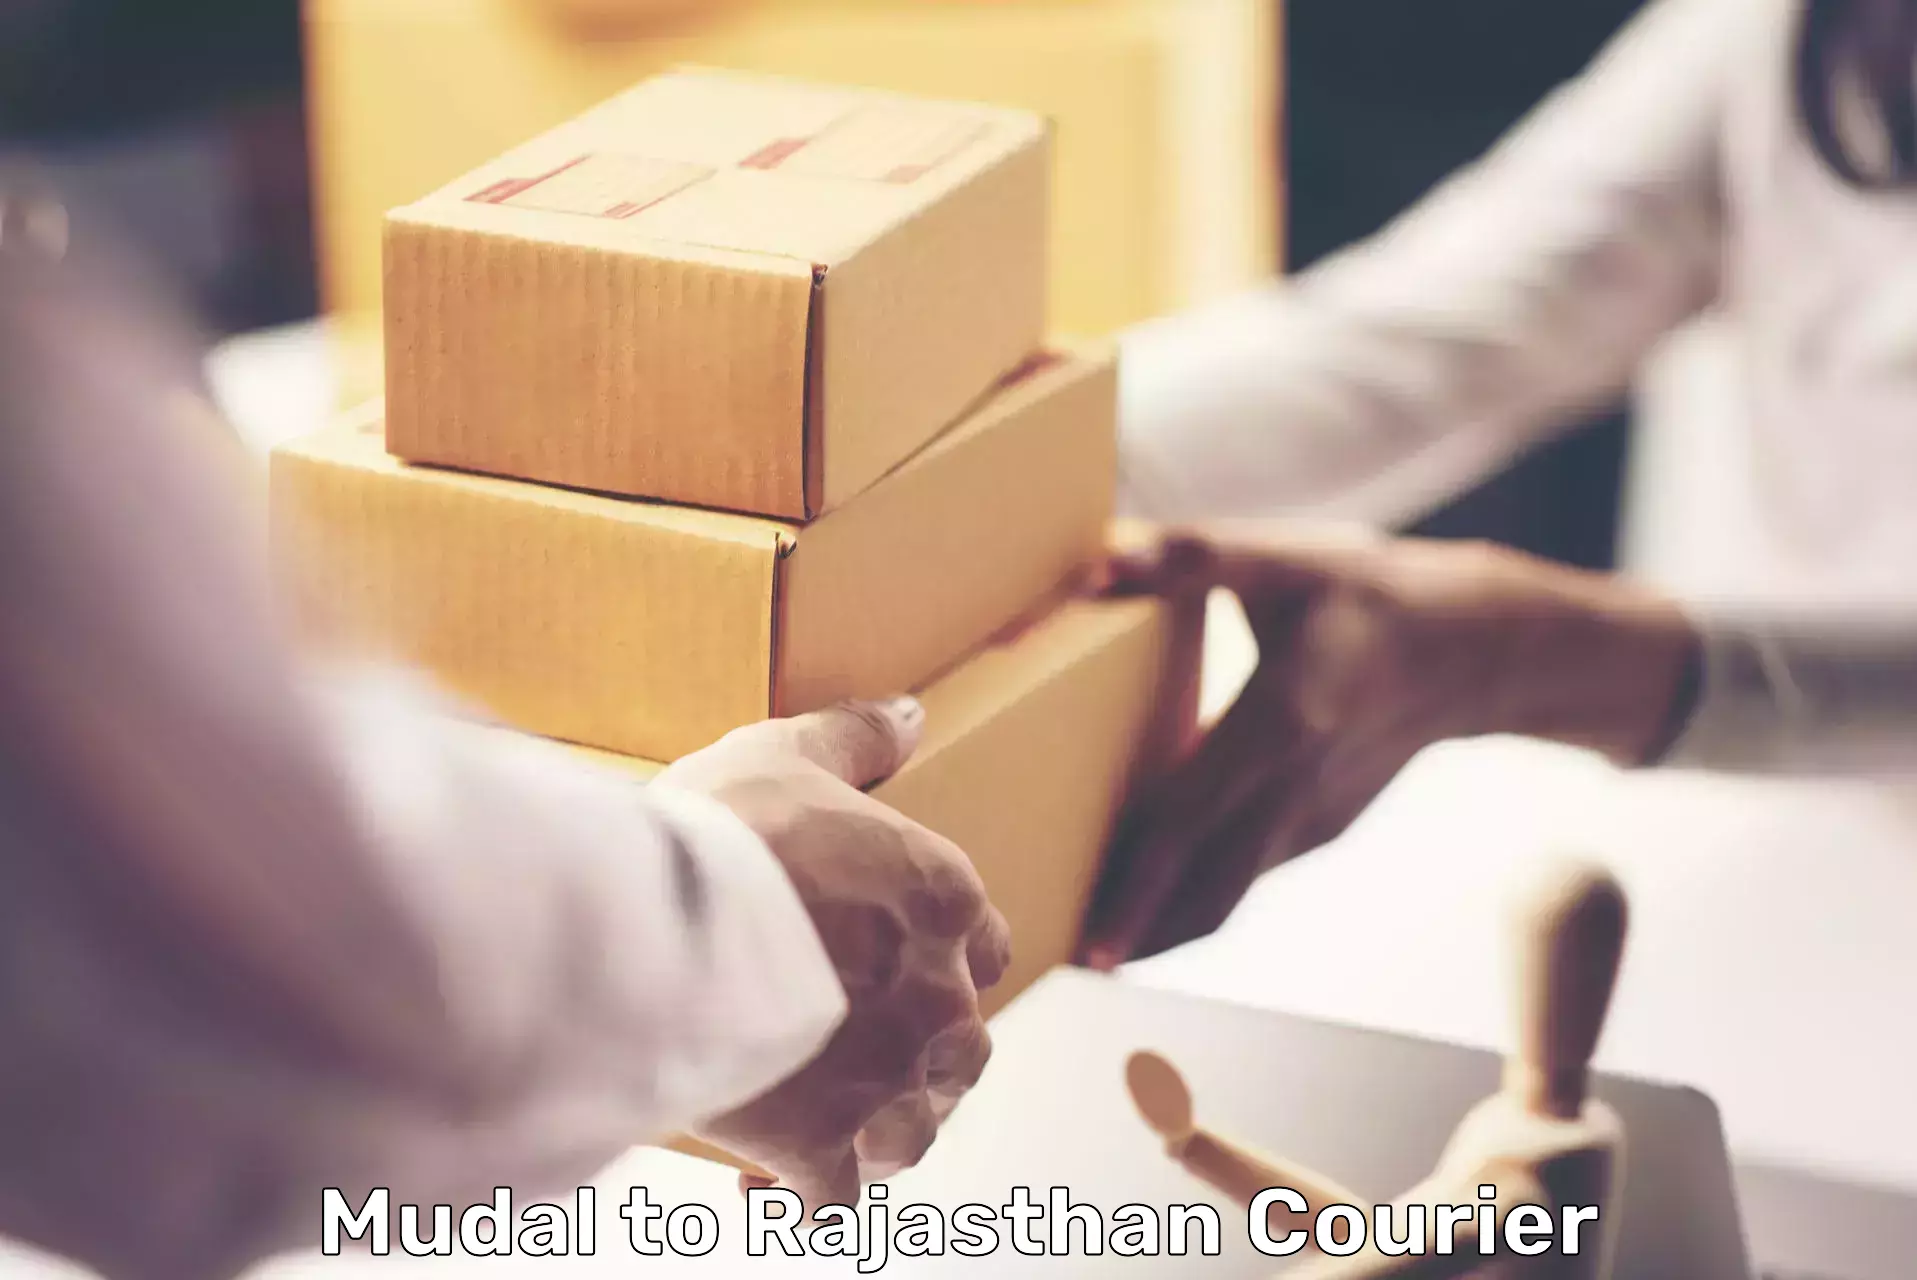 Courier service partnerships Mudal to Neem ka Thana